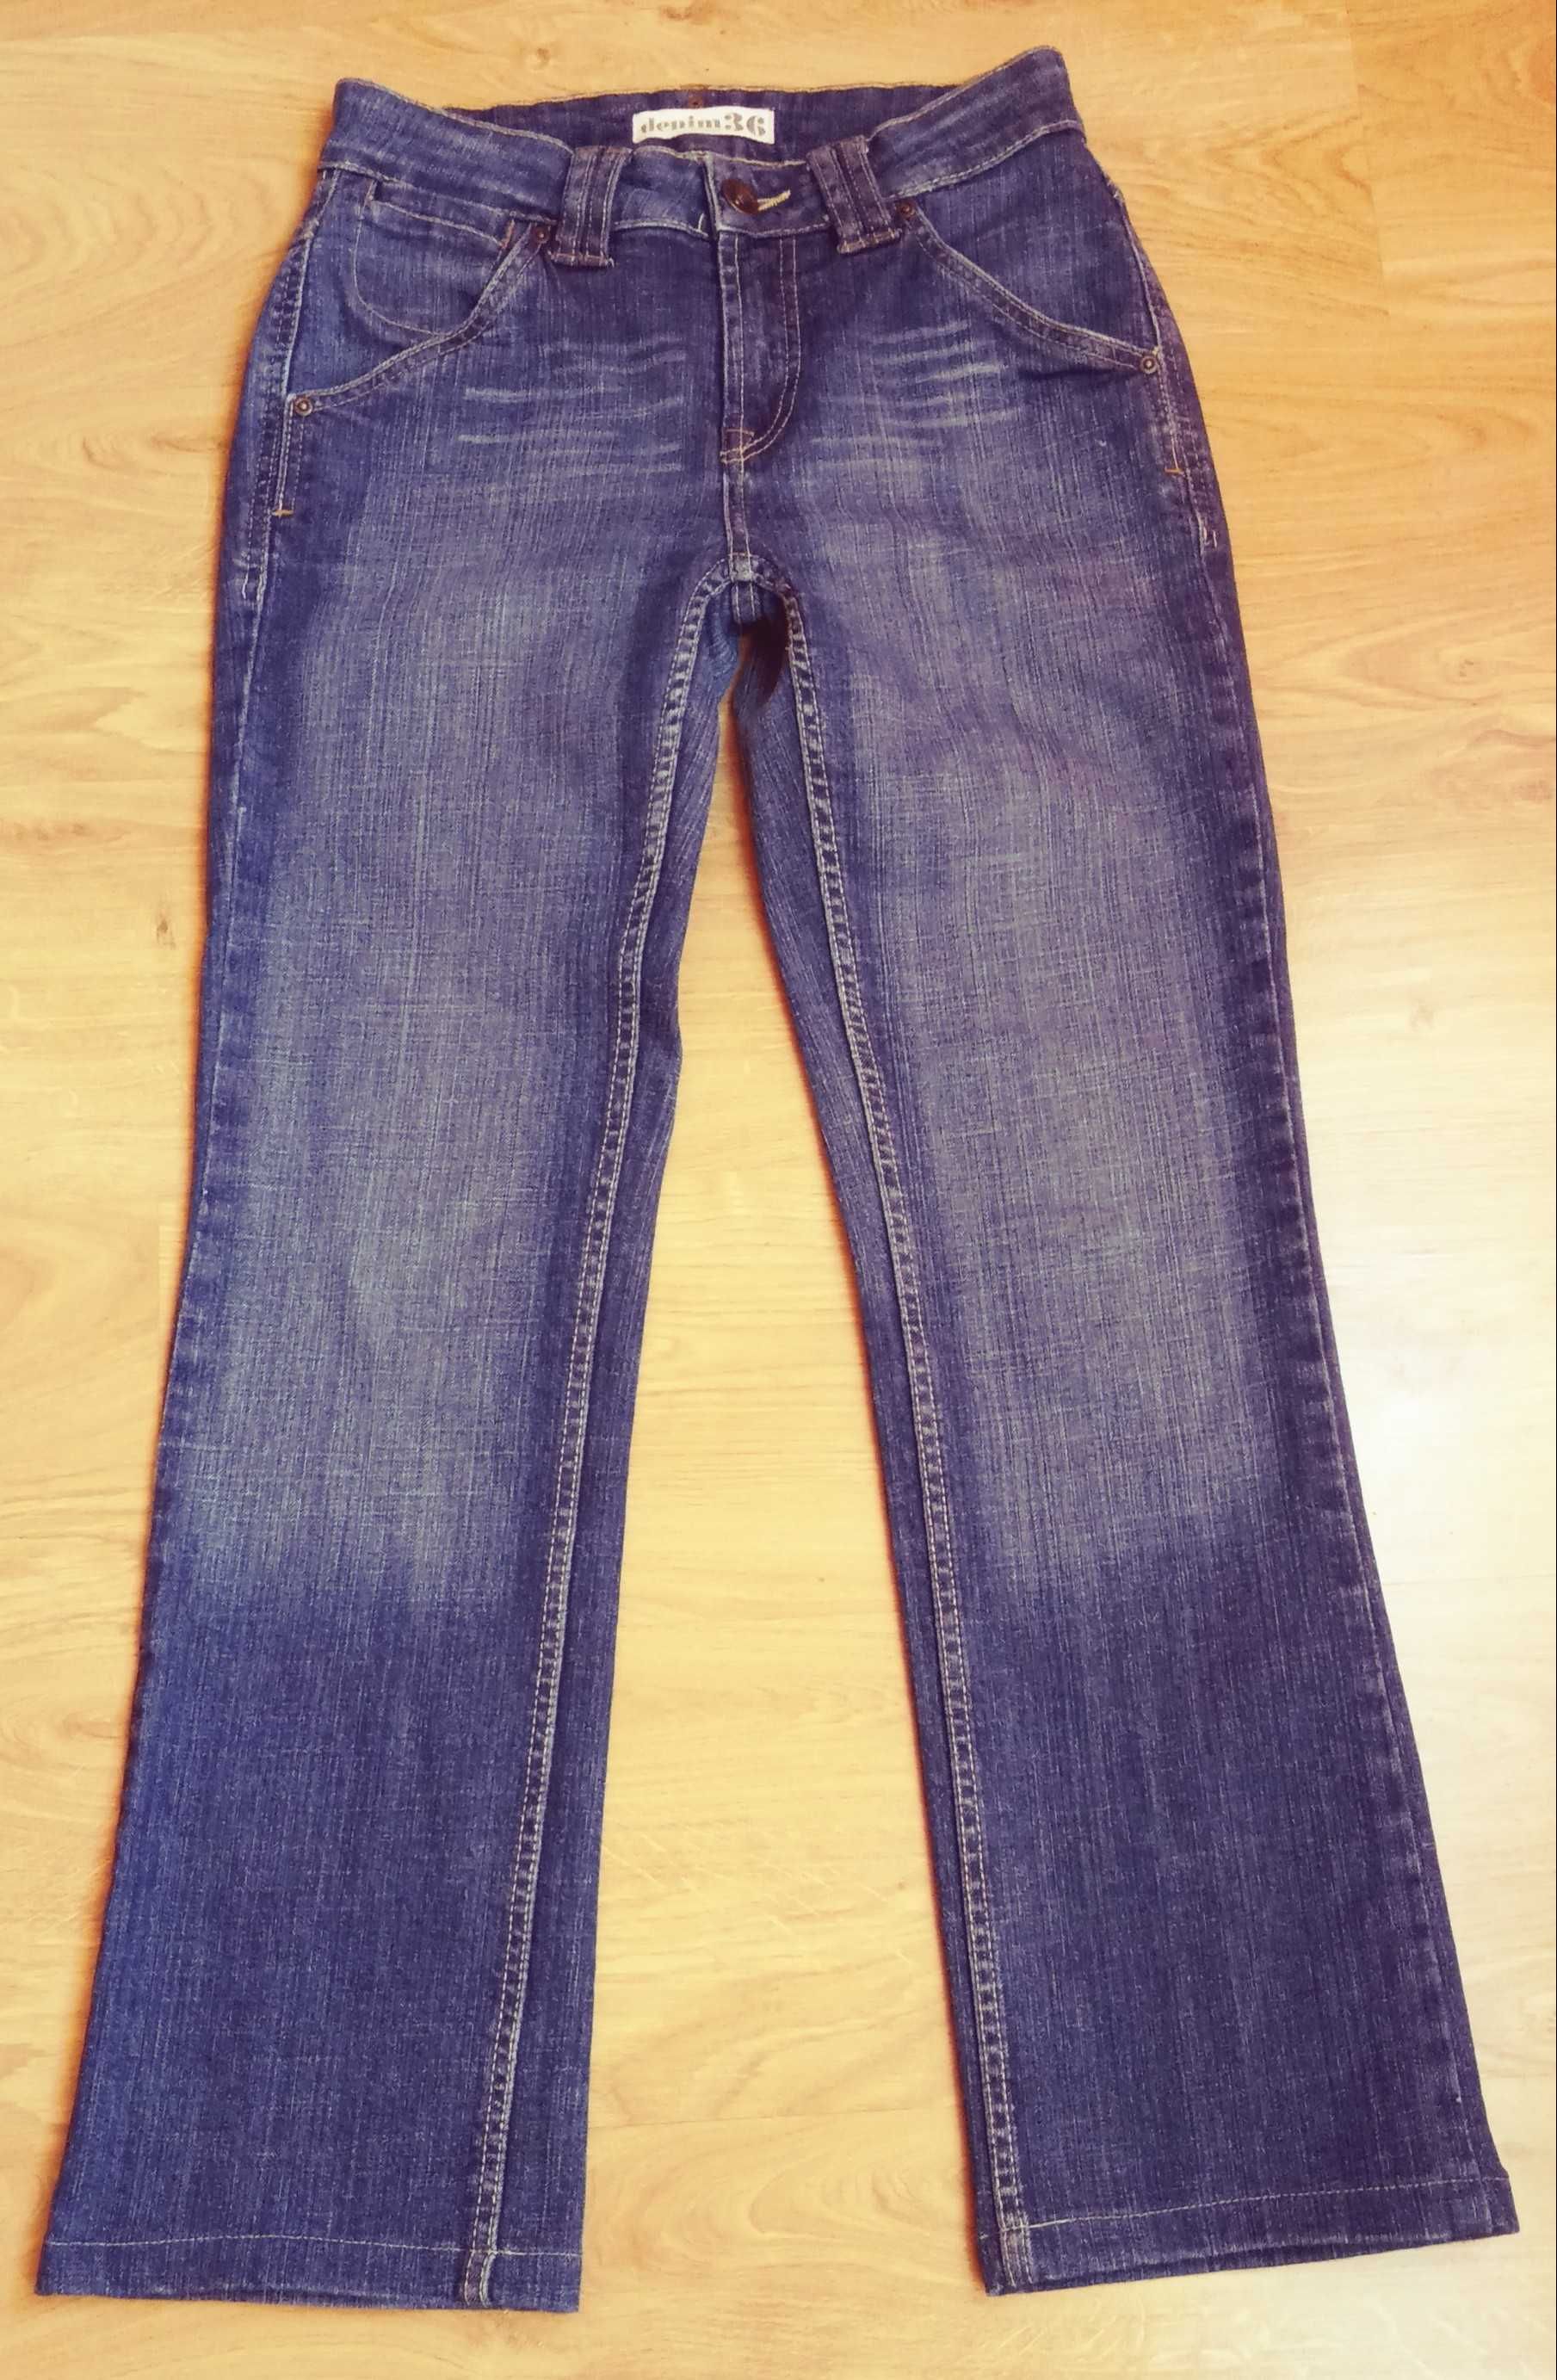 Spodnie jeans Denim by Lindex, rozm 36.